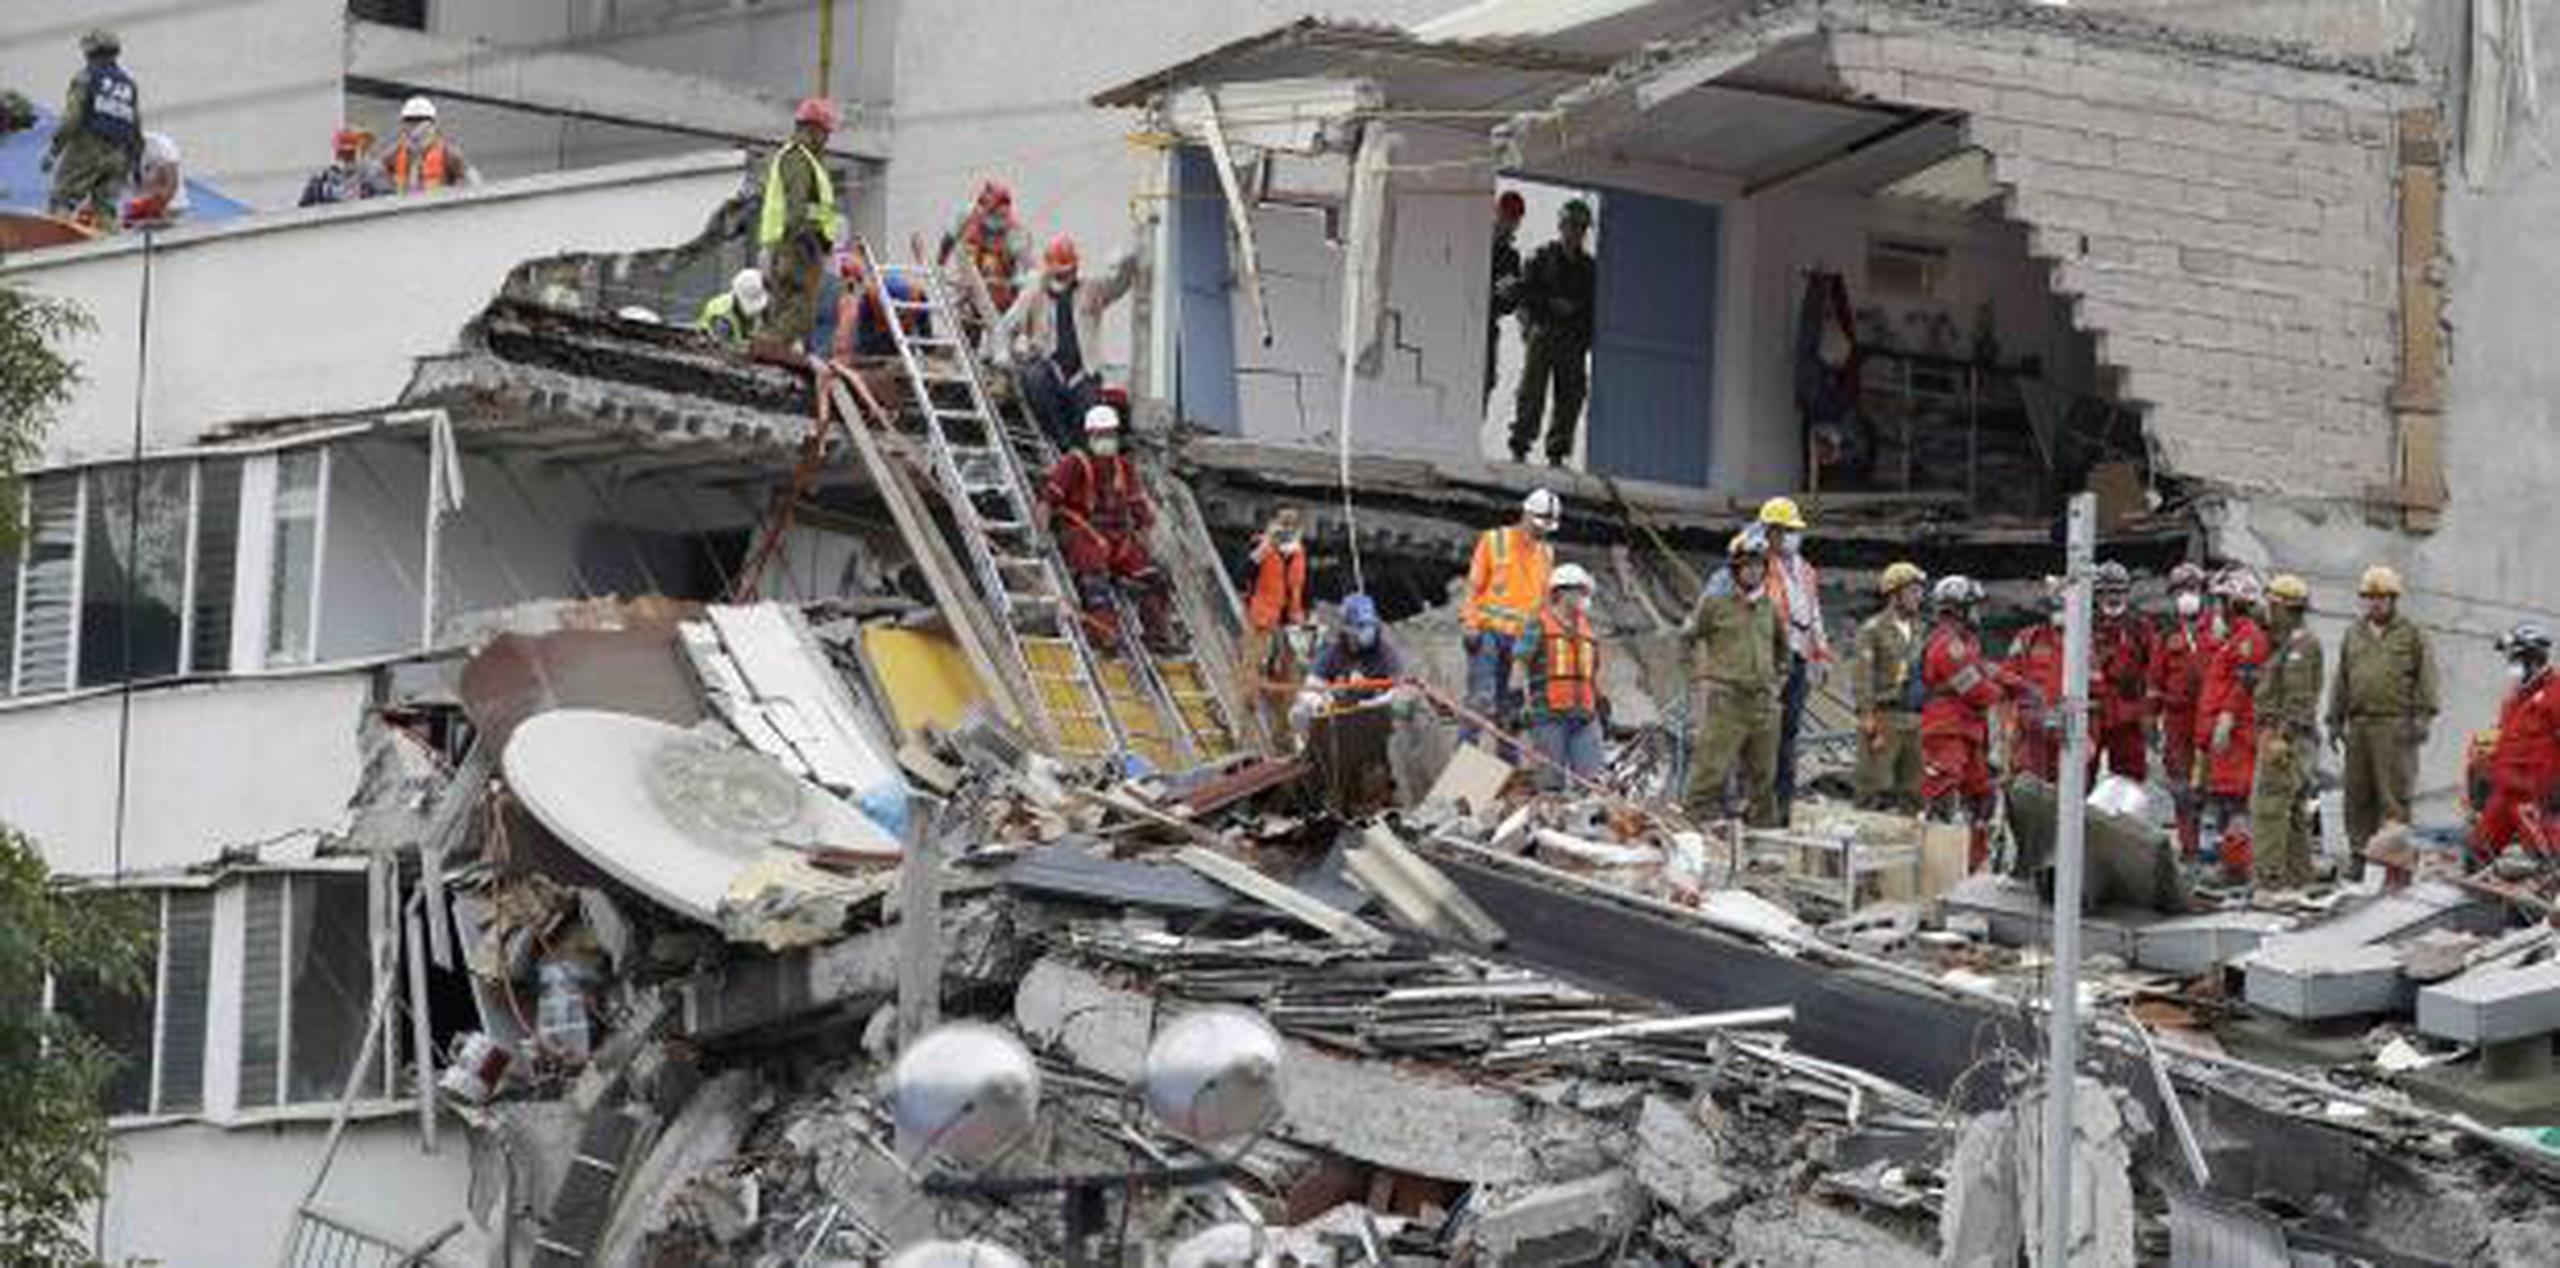 El sismo de magnitud 7.1, con epicentro entre Puebla y Morelos, dejó 369 muertos. (Archivo)